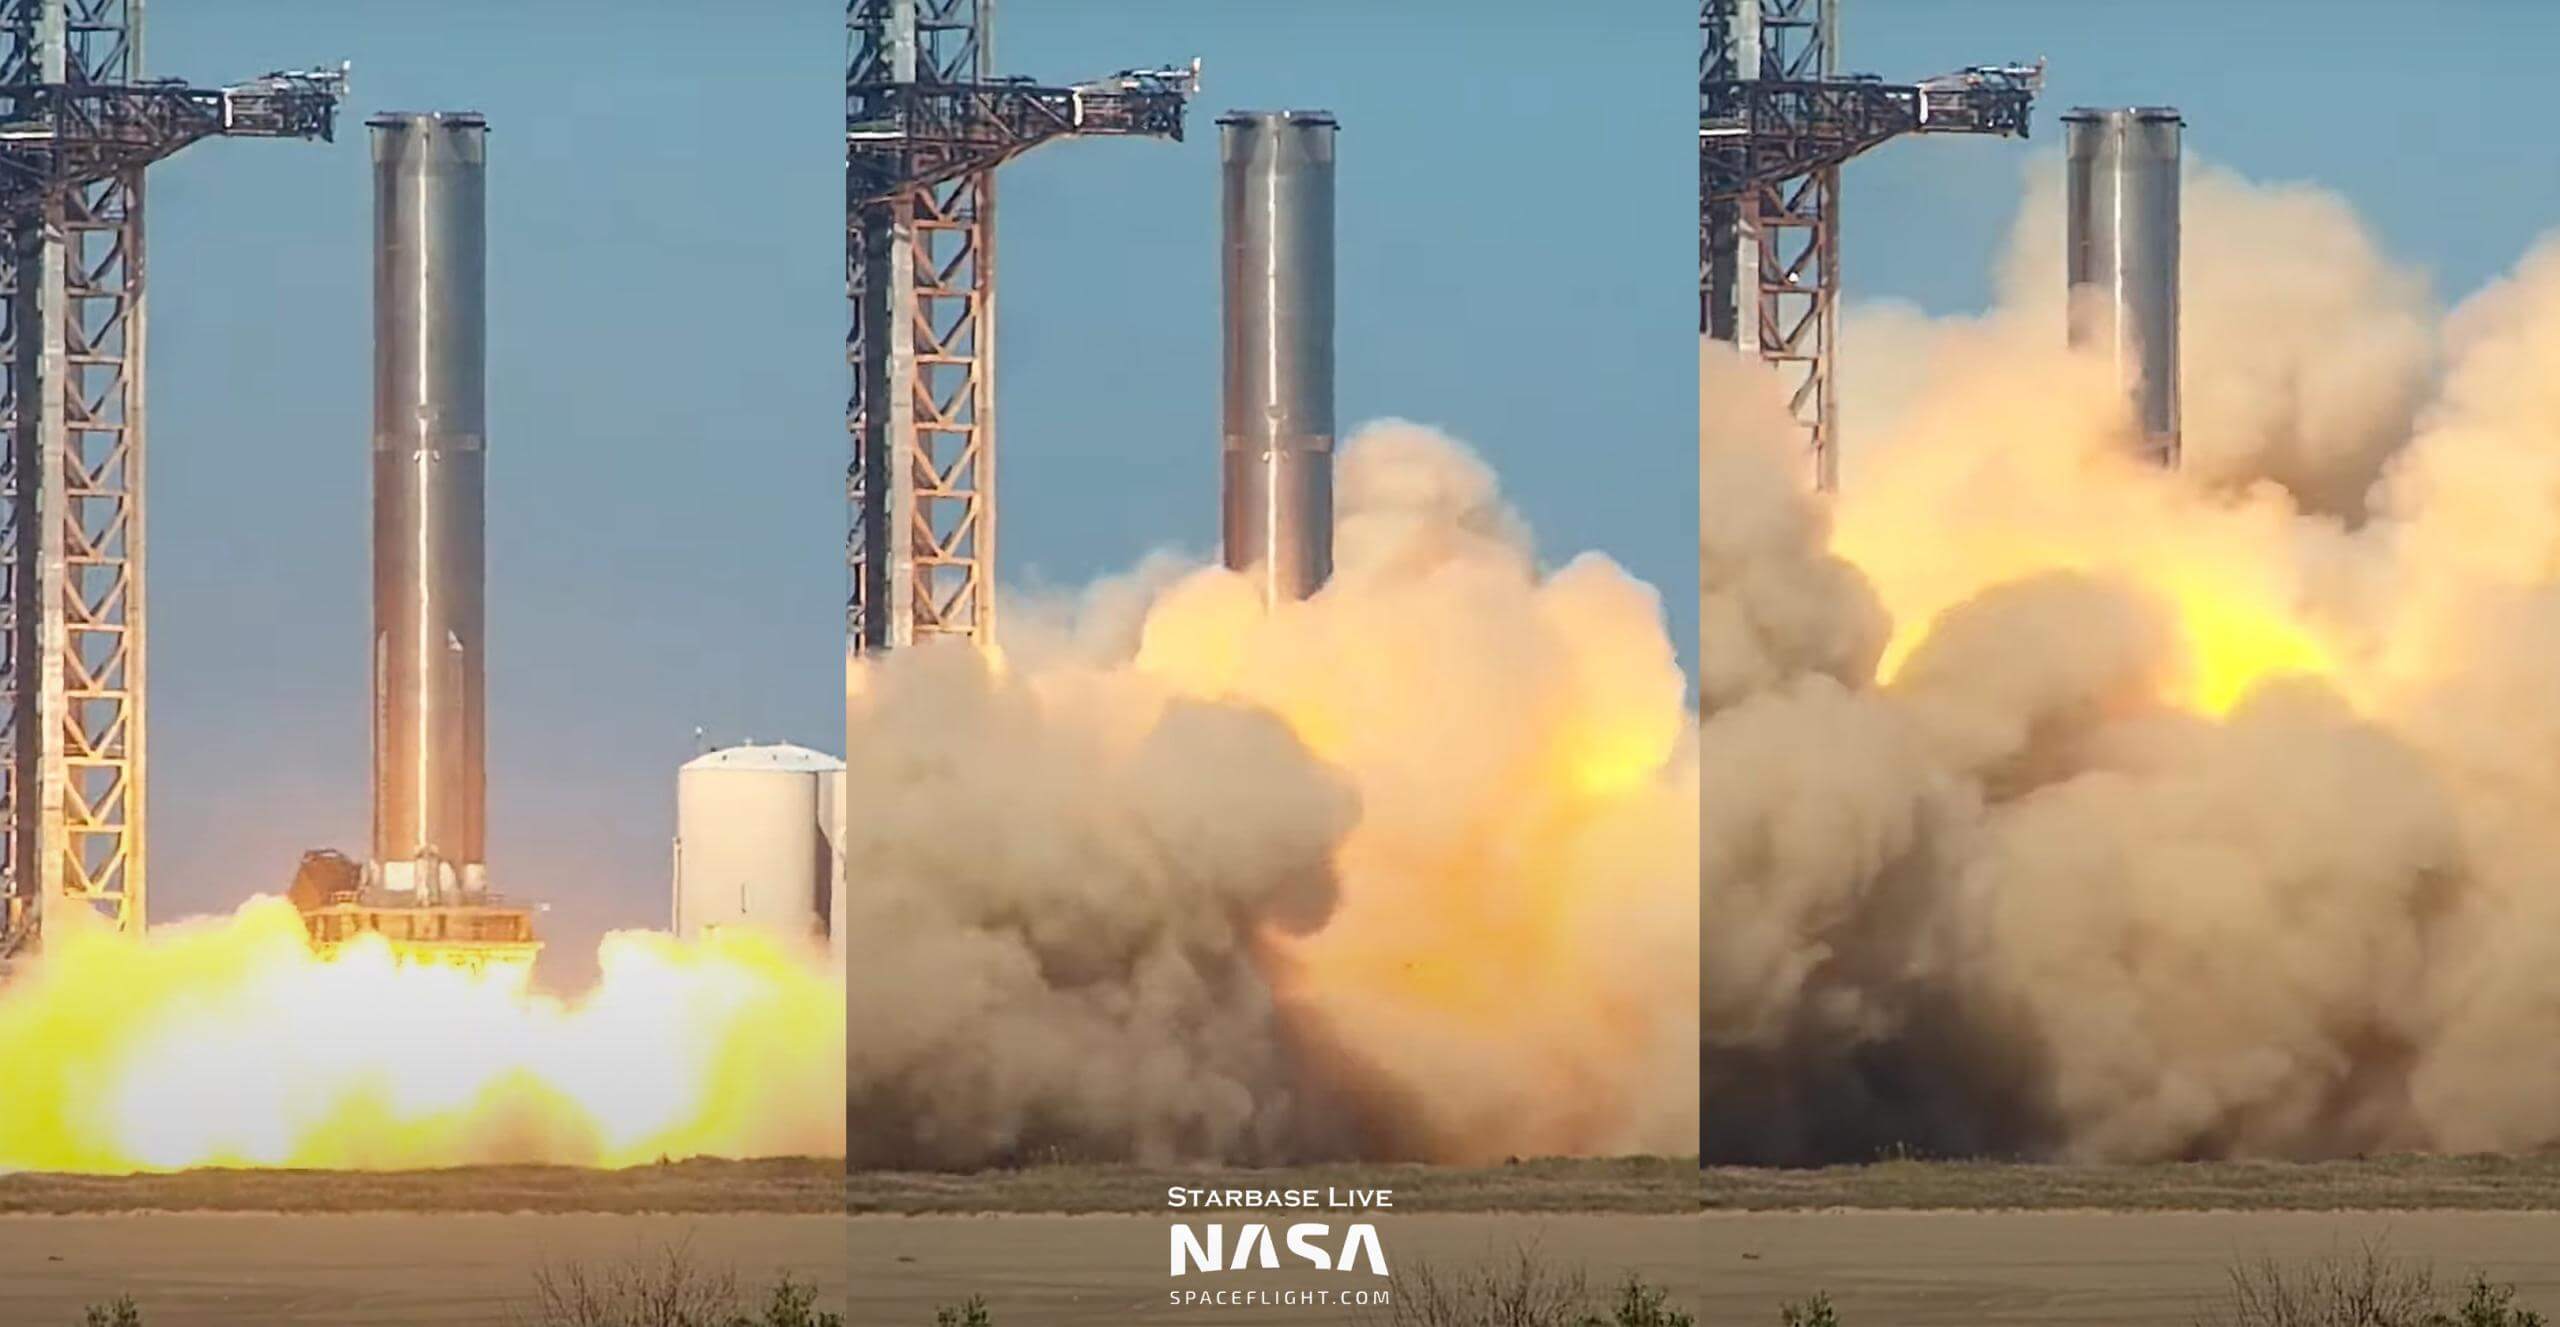 स्पेसएक्स का स्टारशिप संक्षेप में दुनिया का सबसे शक्तिशाली सक्रिय रॉकेट बन गया